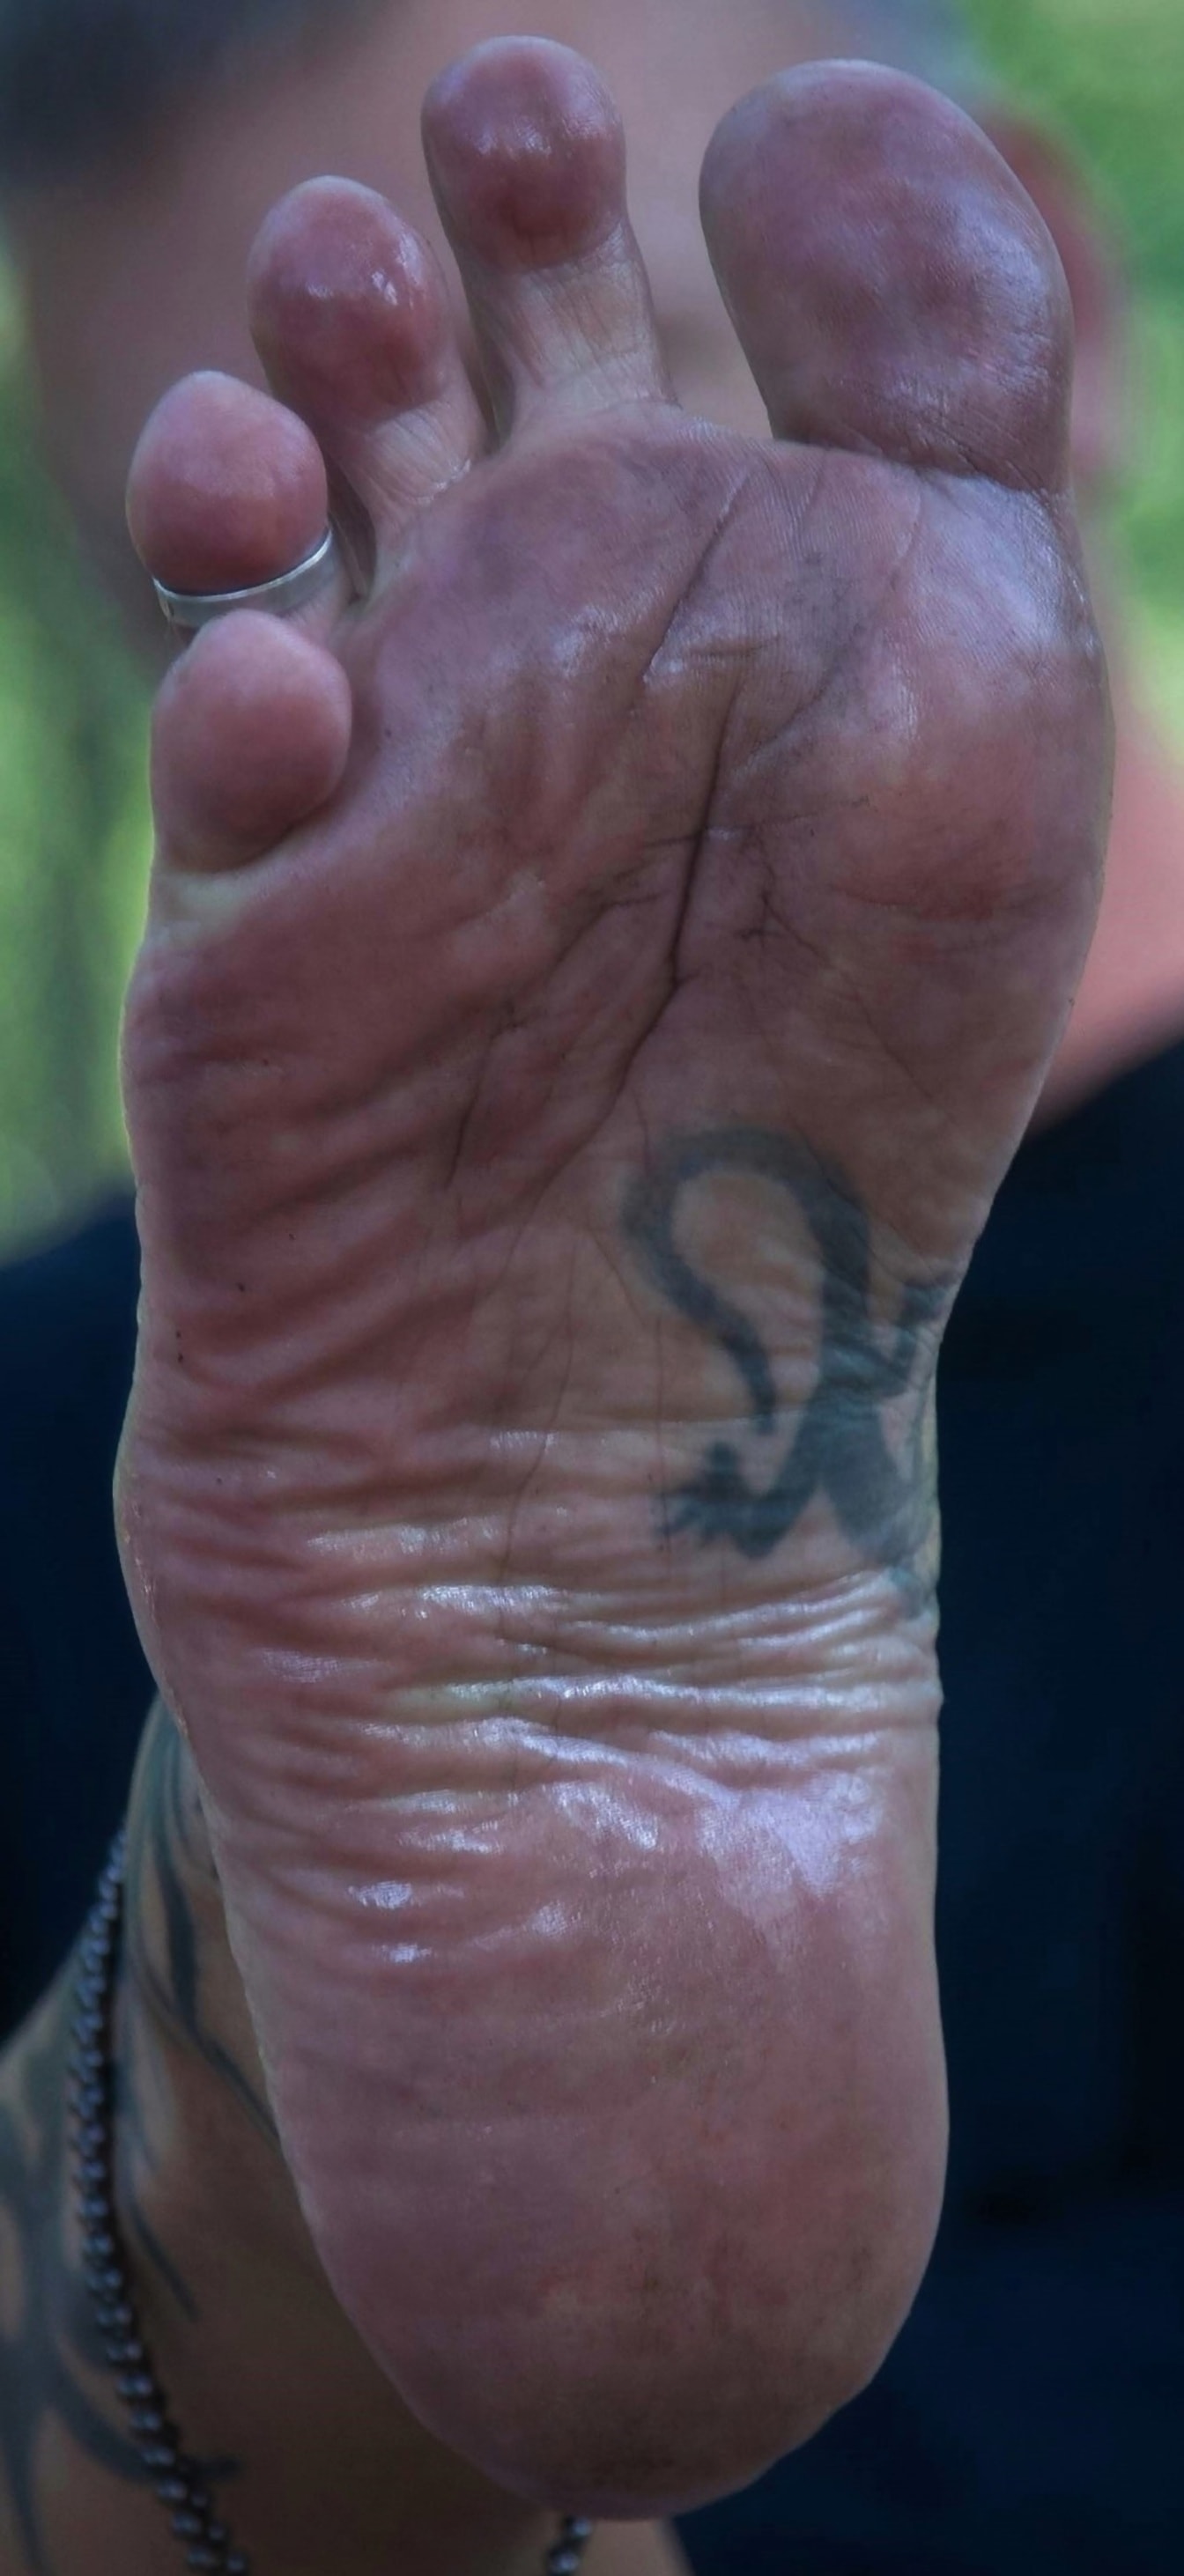 Bosy mężczyzna zbliżenie brudnej stopy z tatuażem i pierścionkiem